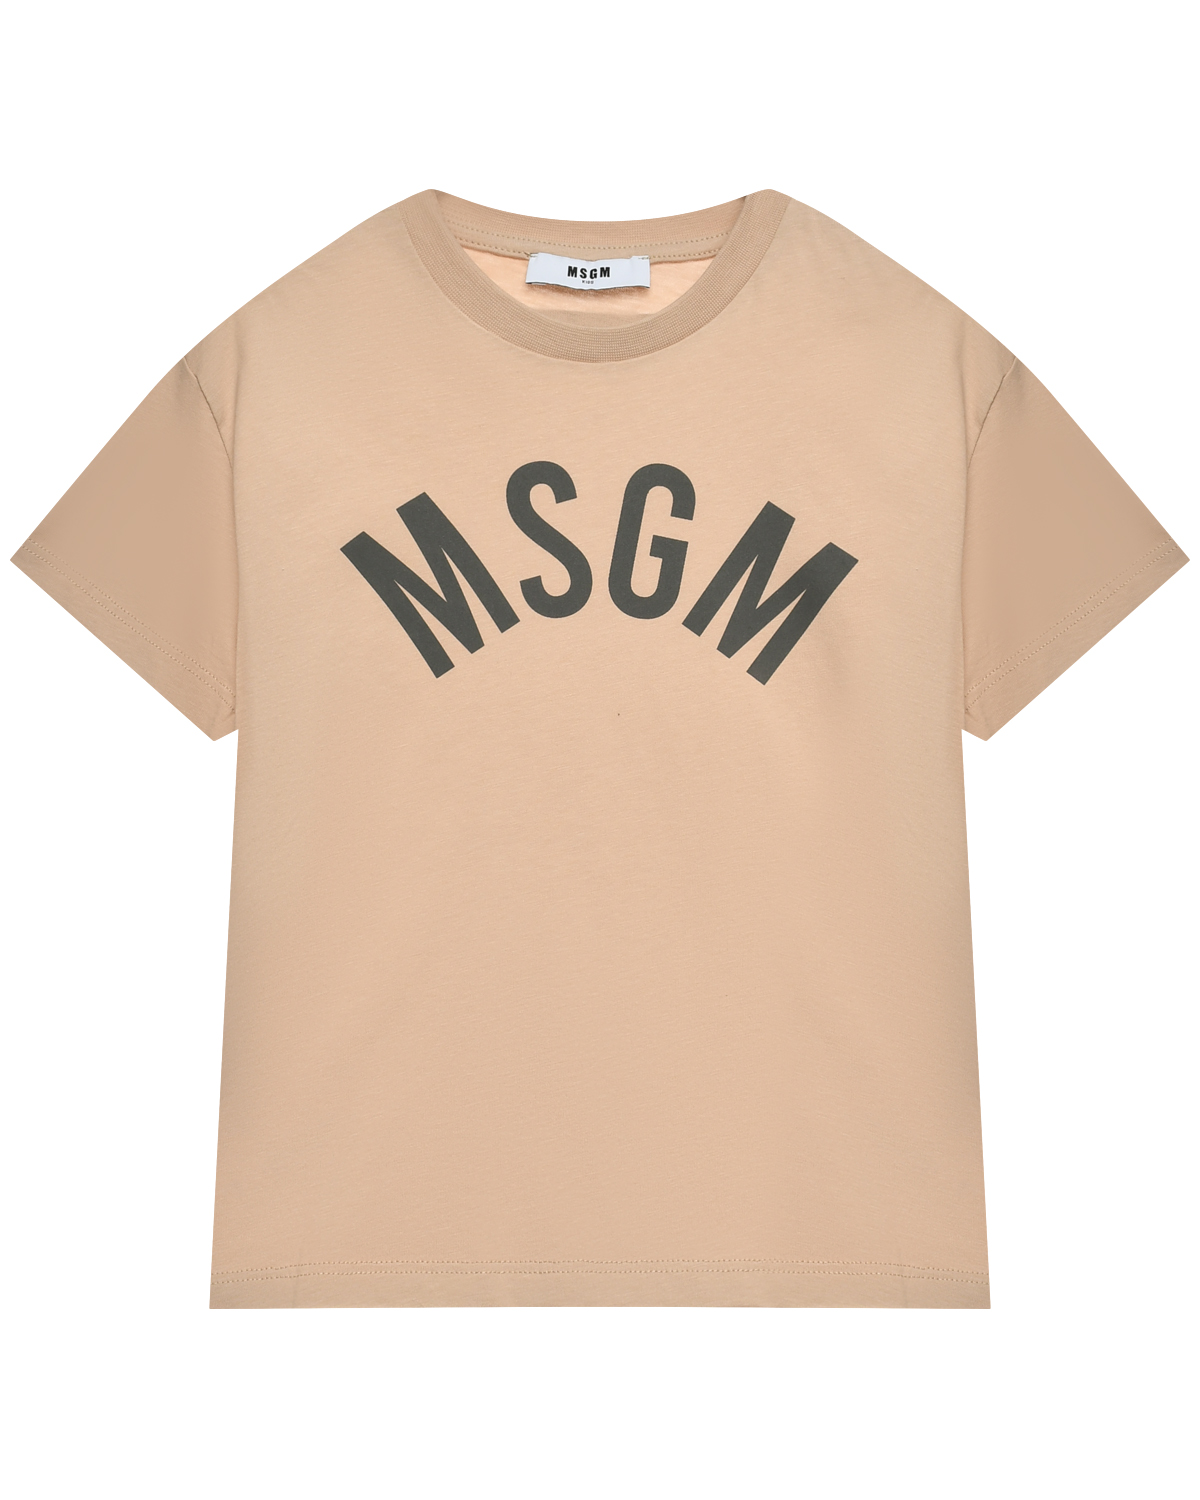 Футболка с логотипом на груди, бежевая MSGM футболка для мальчиков бежевая с рисунком и текстом